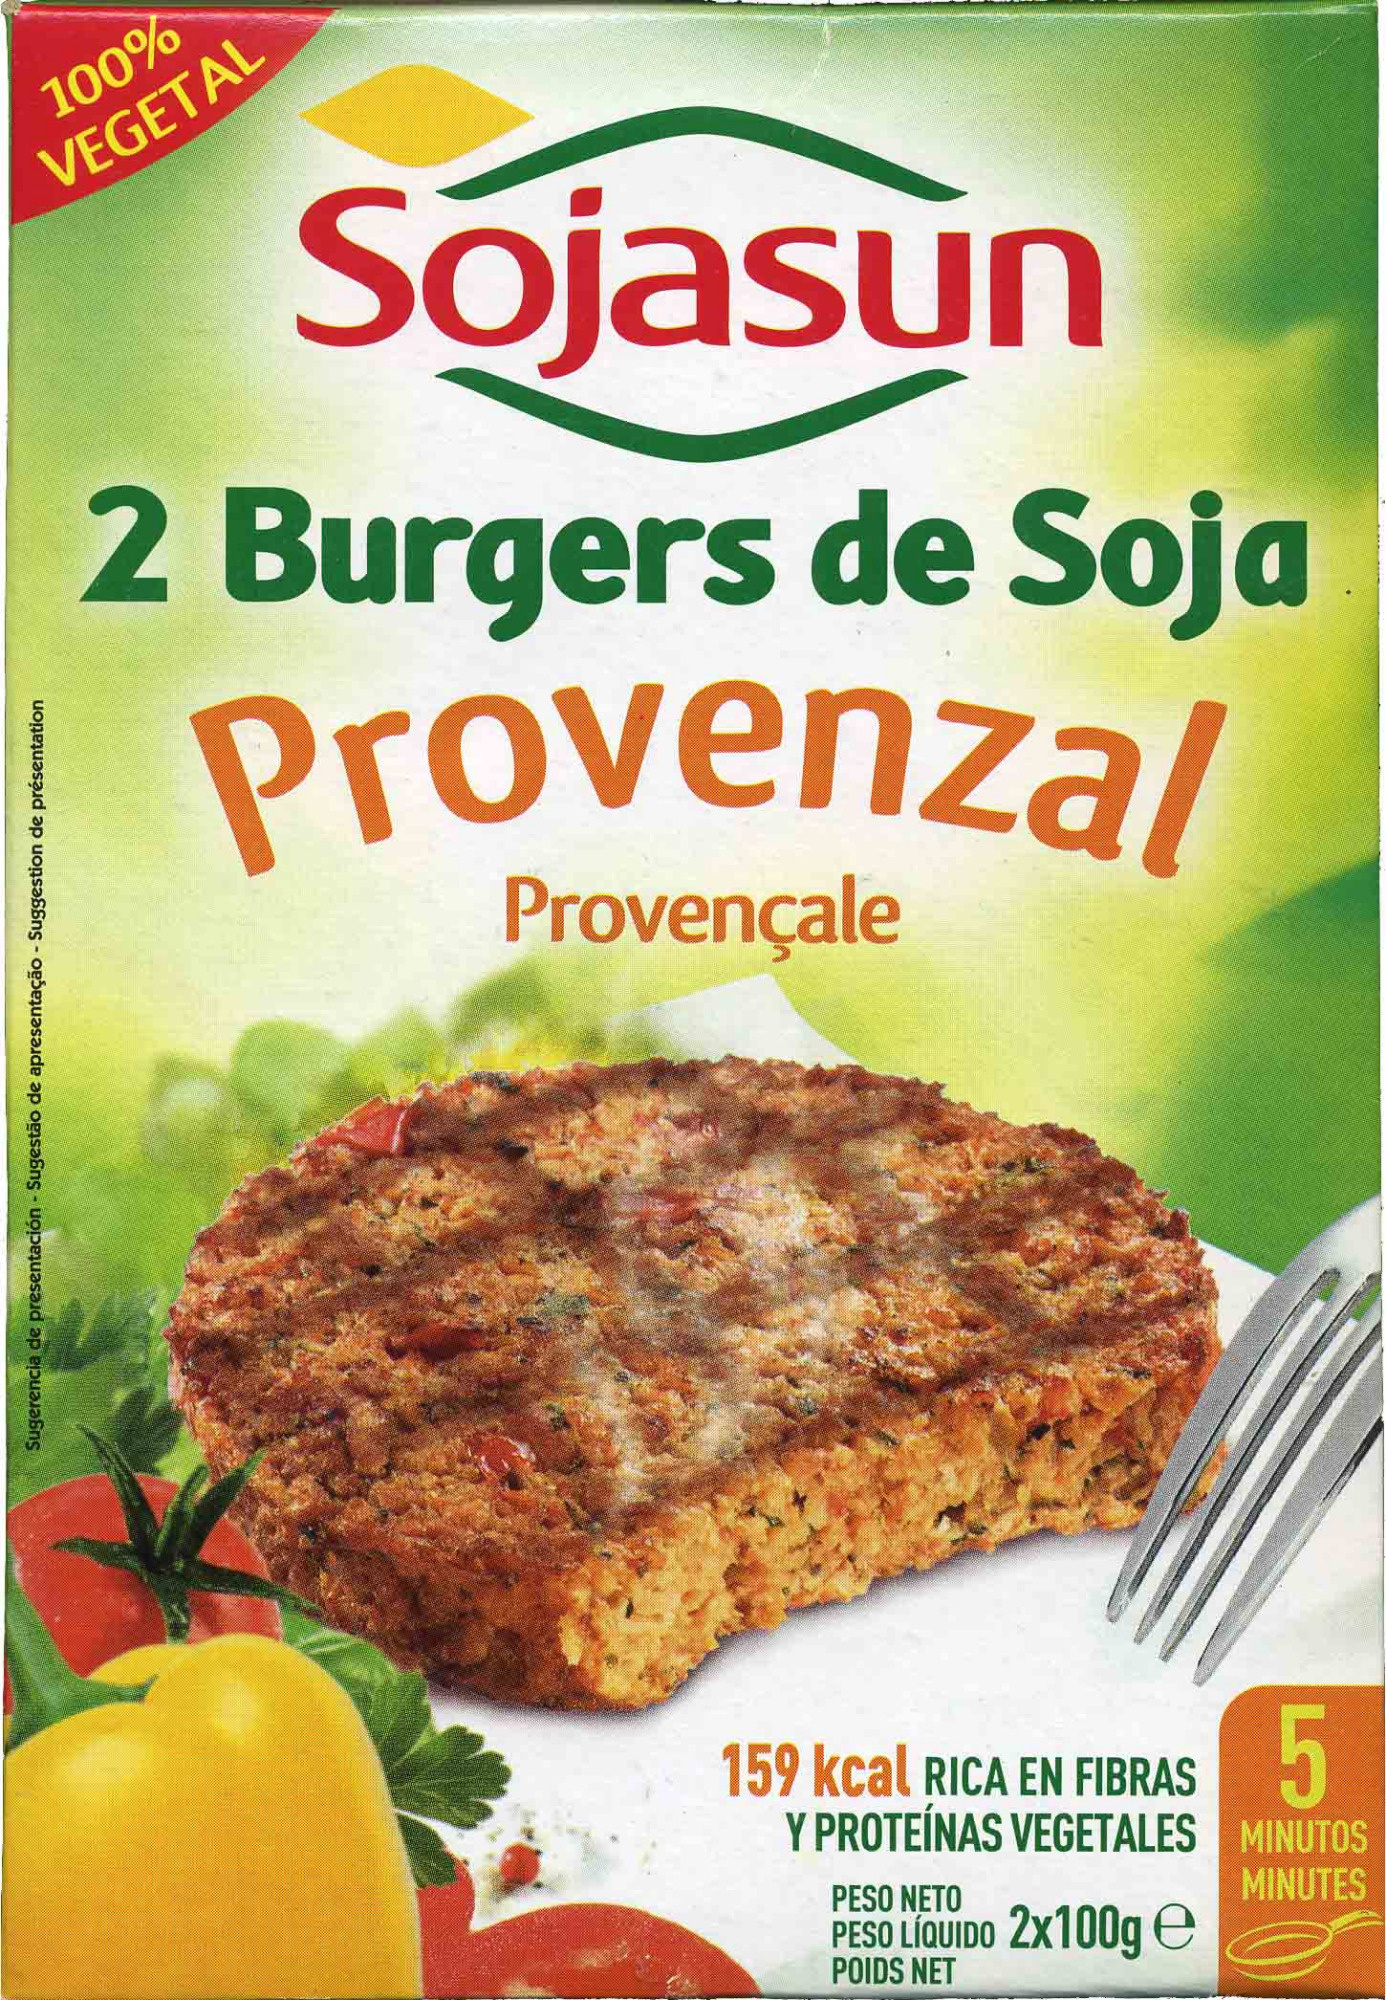 2 burgers de soja provenzal - Producte - es